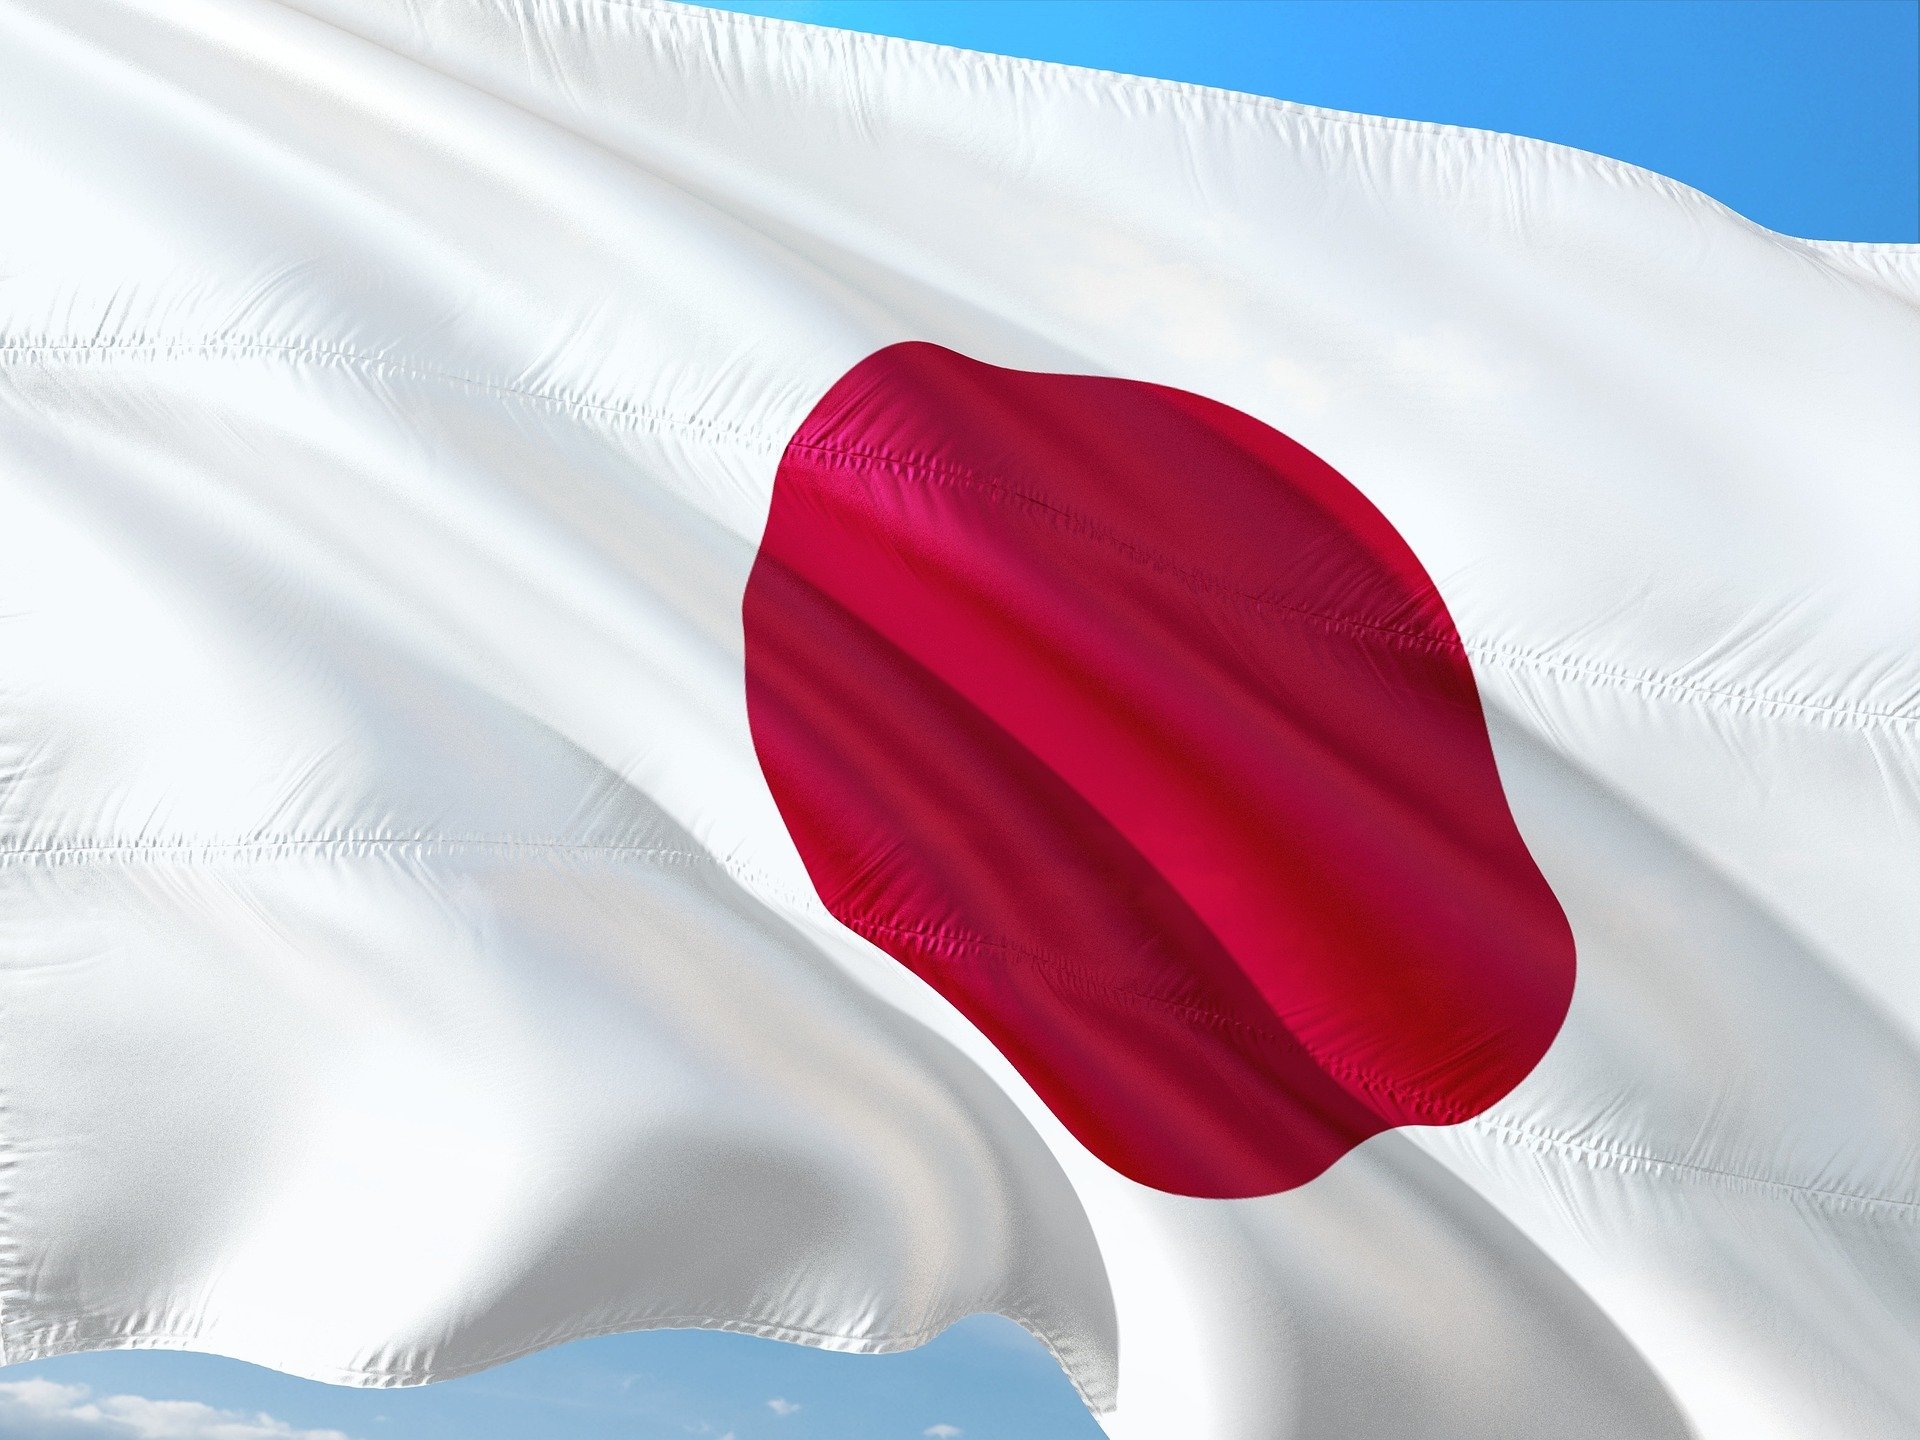 A Seleção Japonesa se prepara para disputar a 6ª Copa do Mundo de sua história. Você sabe quais são os melhores jogadores do Japão? Confira!